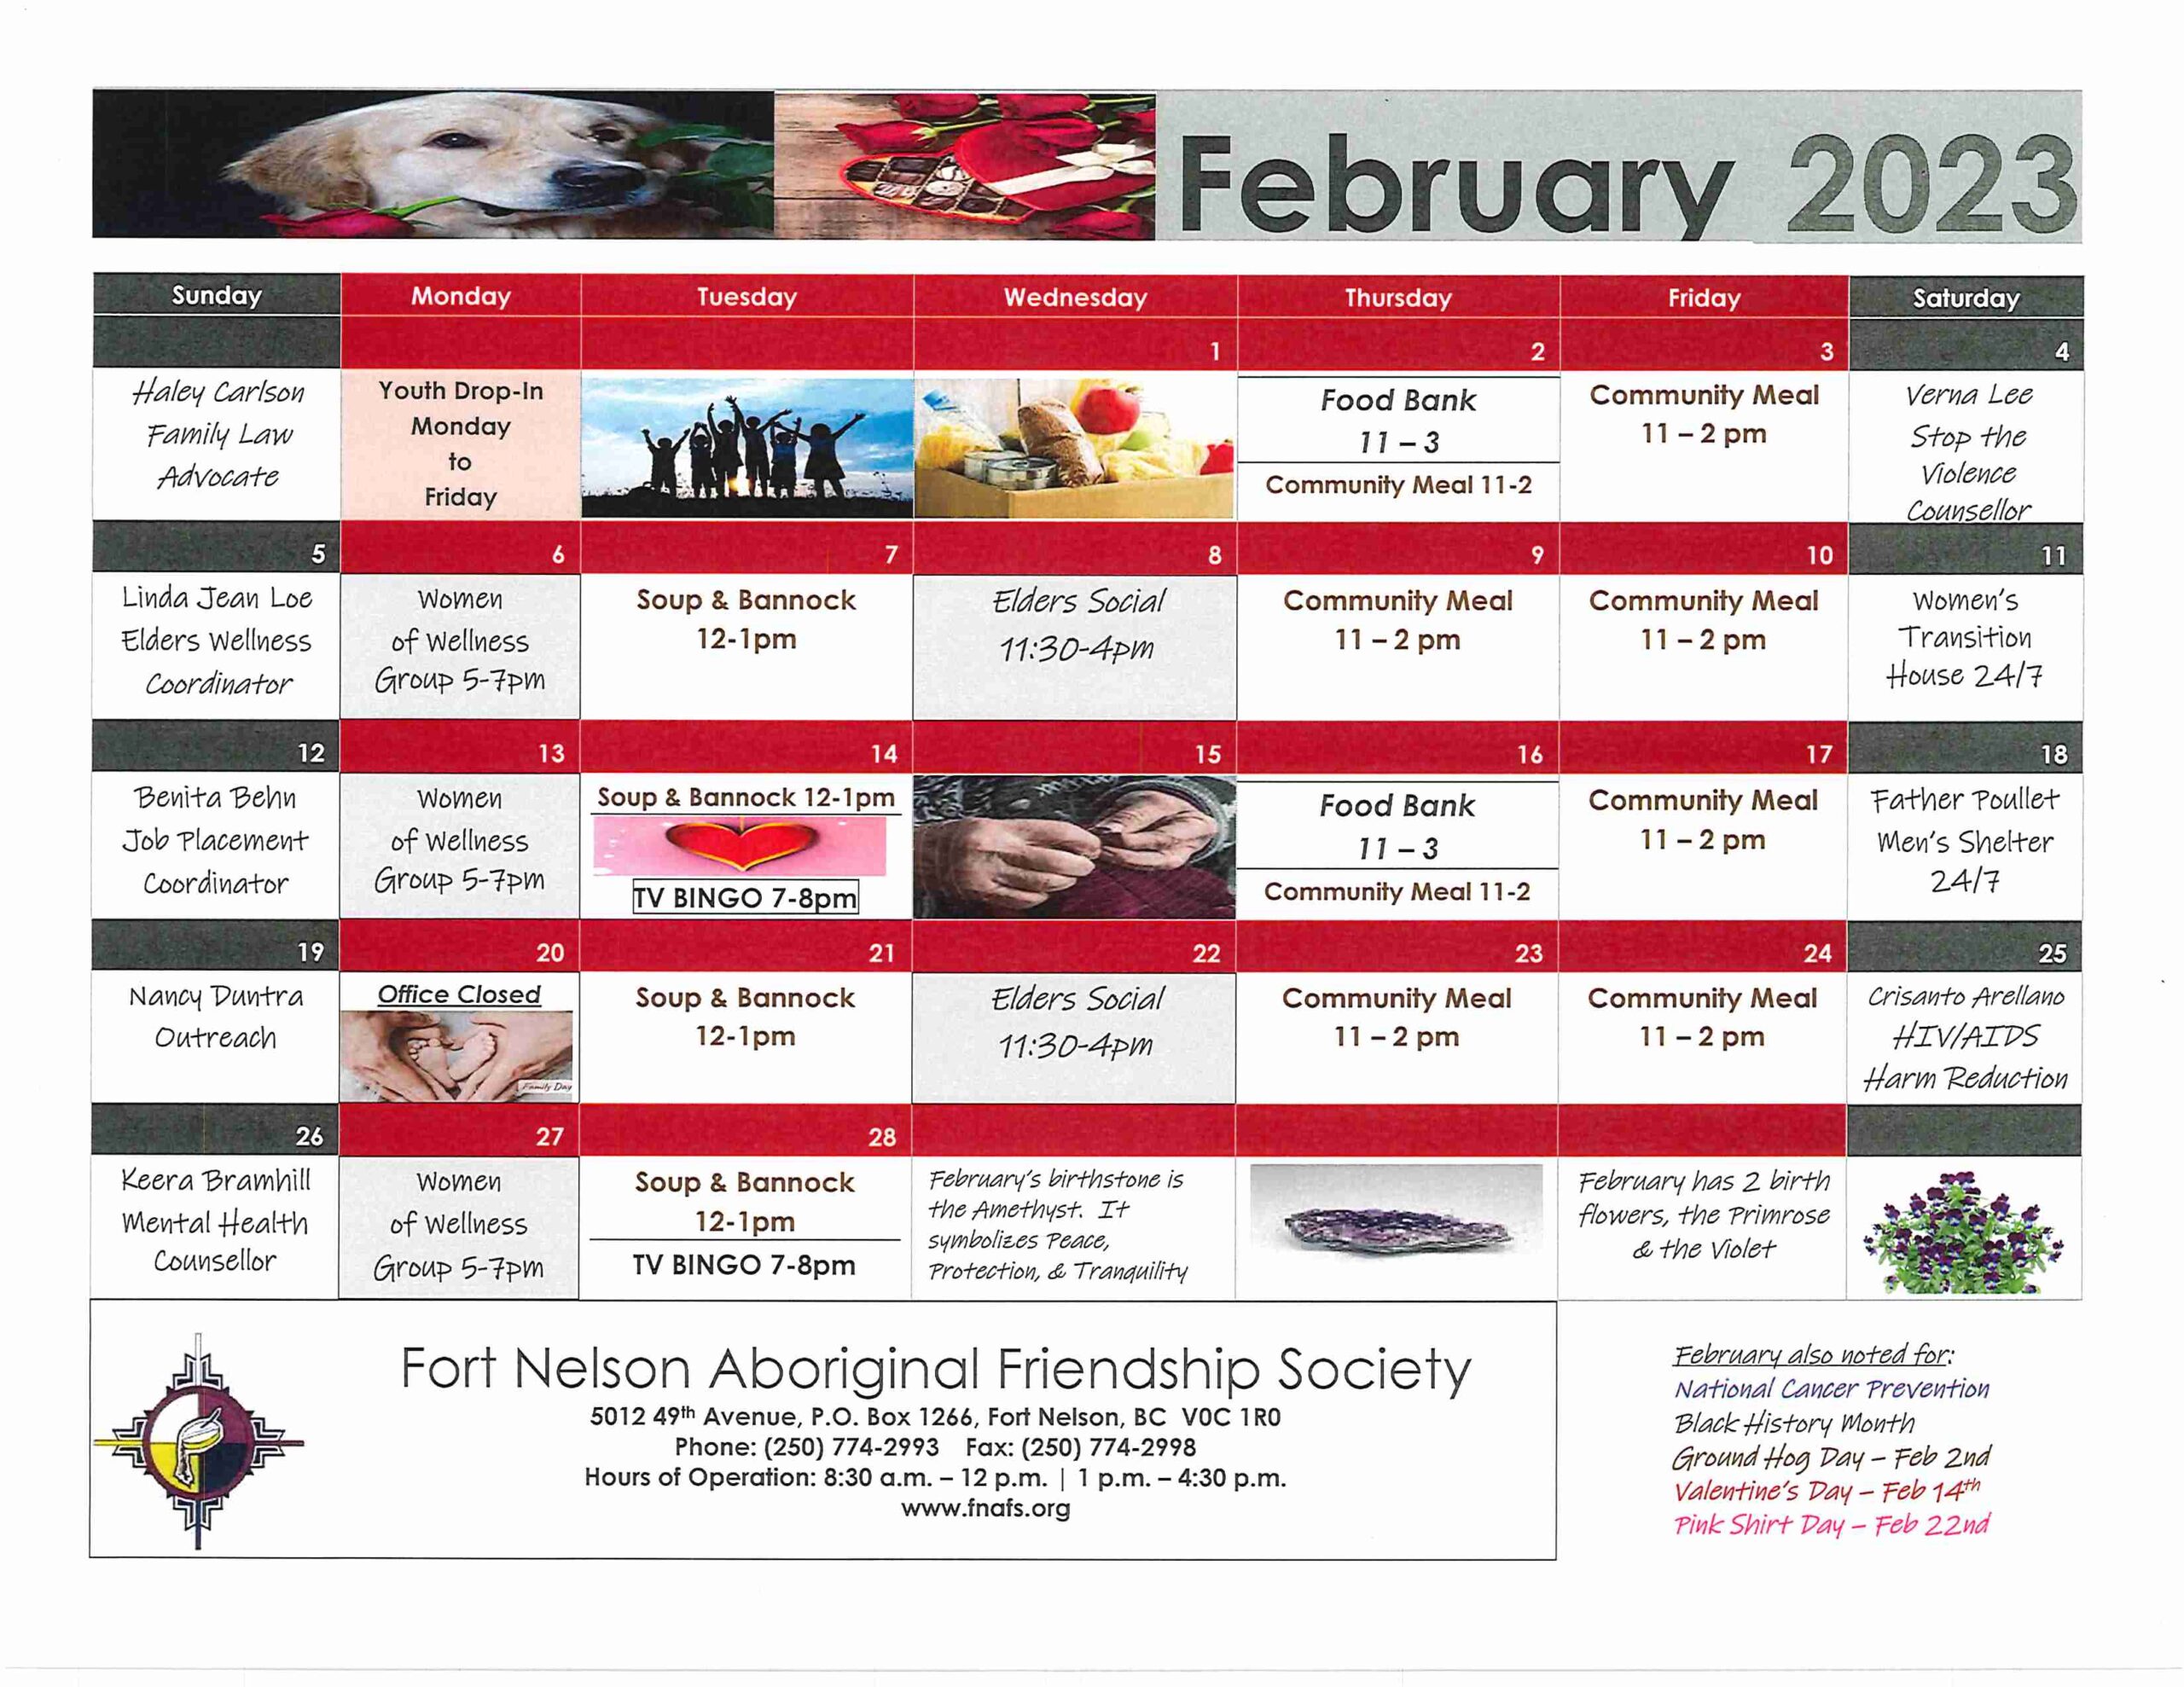 February 2023 Events Calendar